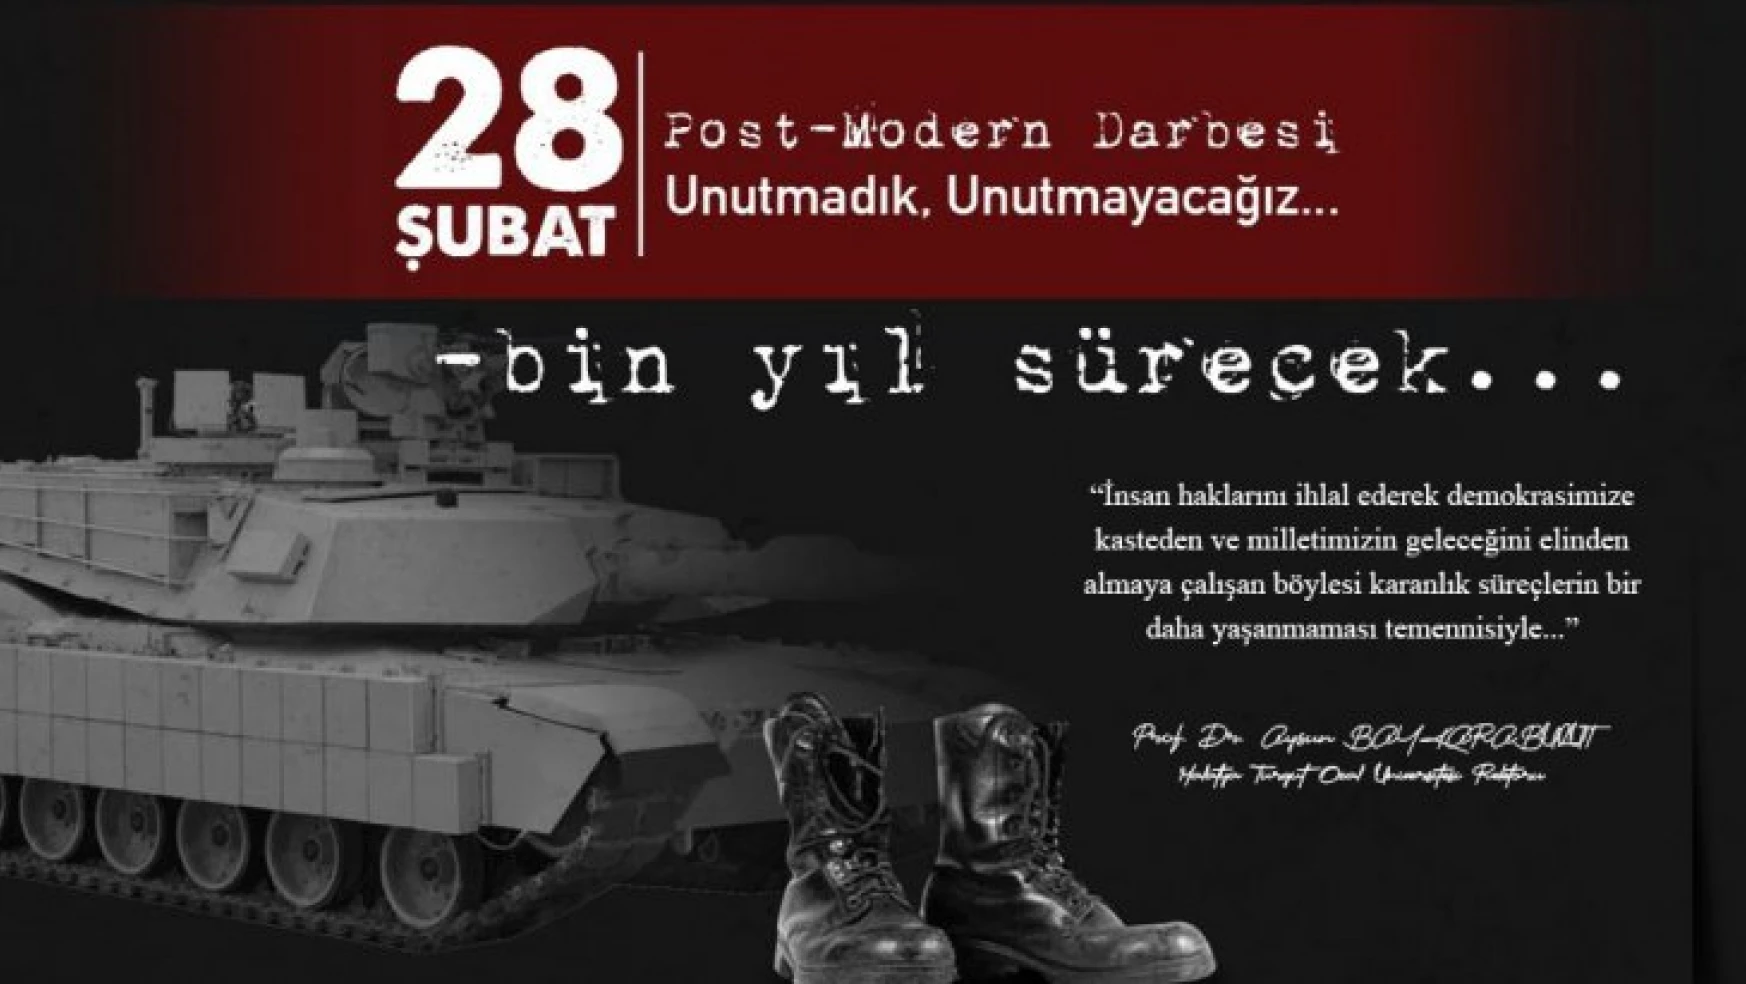 Rektör Karabulut'un 28 Şubat Post Modern Darbesi'nin 25. Yıl Dönümü Mesajı